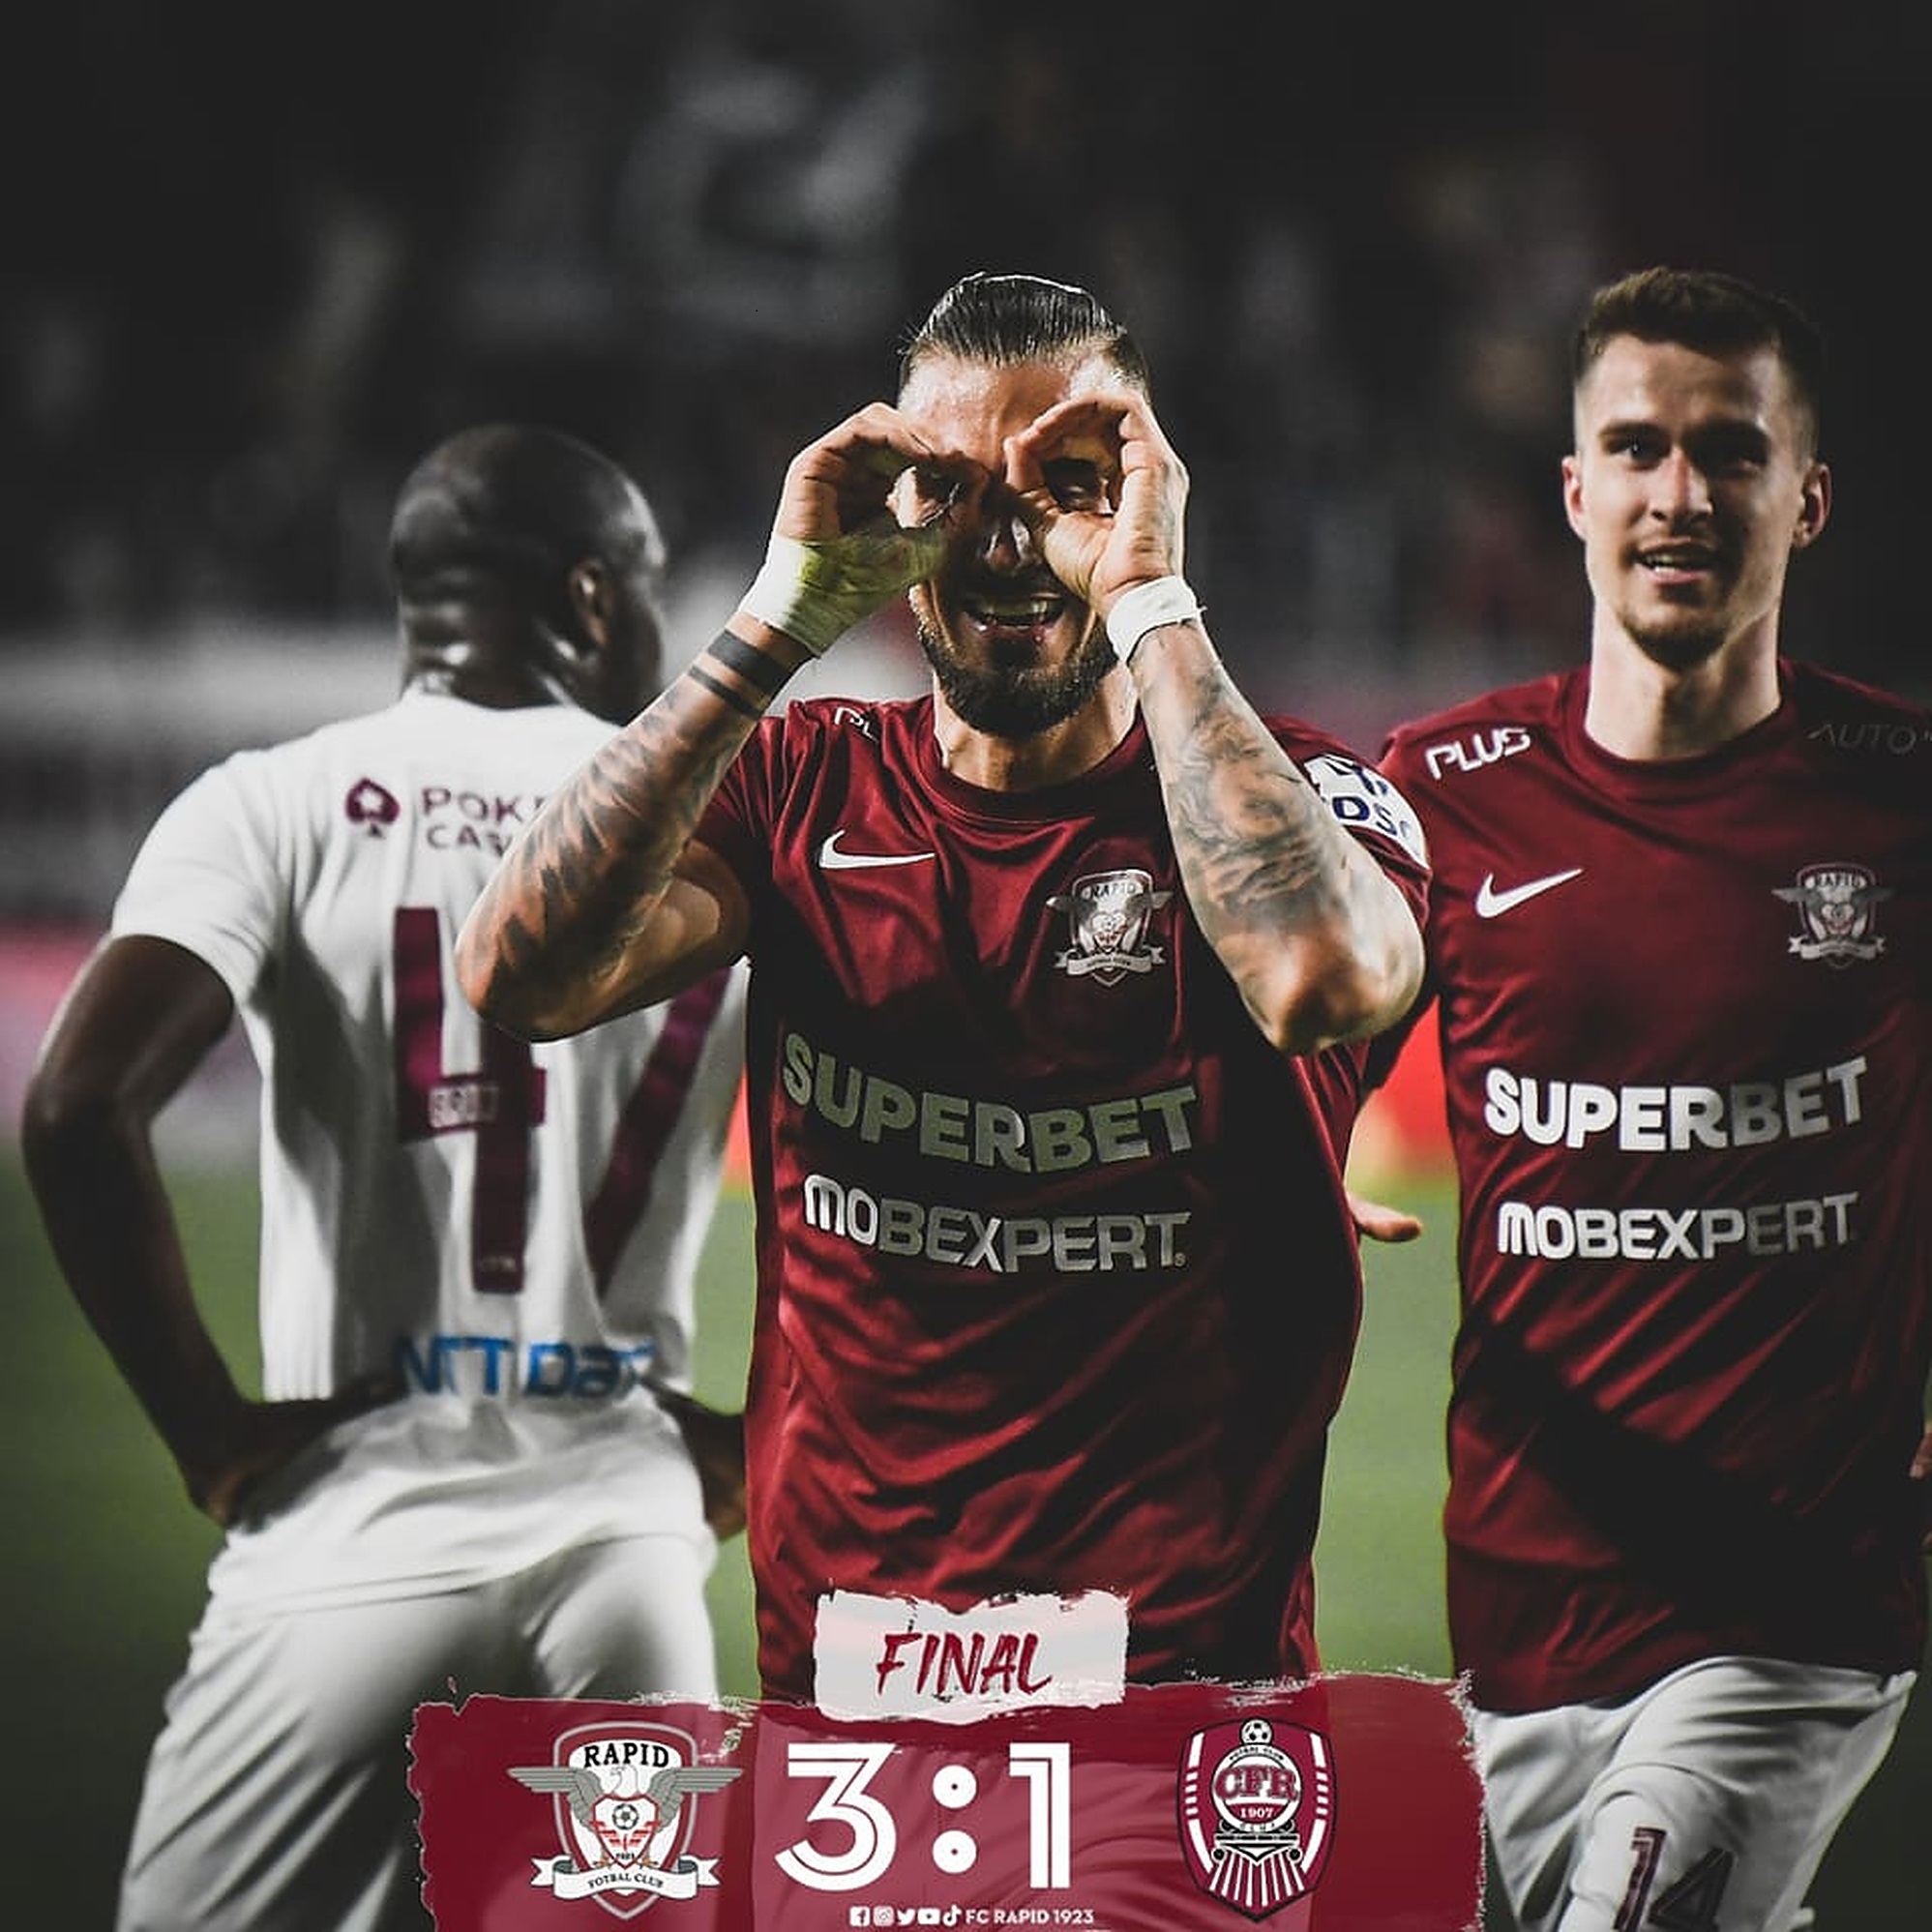 FC Hermannstadt - CFR Cluj 1-0, Ardelenii ratează șansa de a trece pe  prima poziție